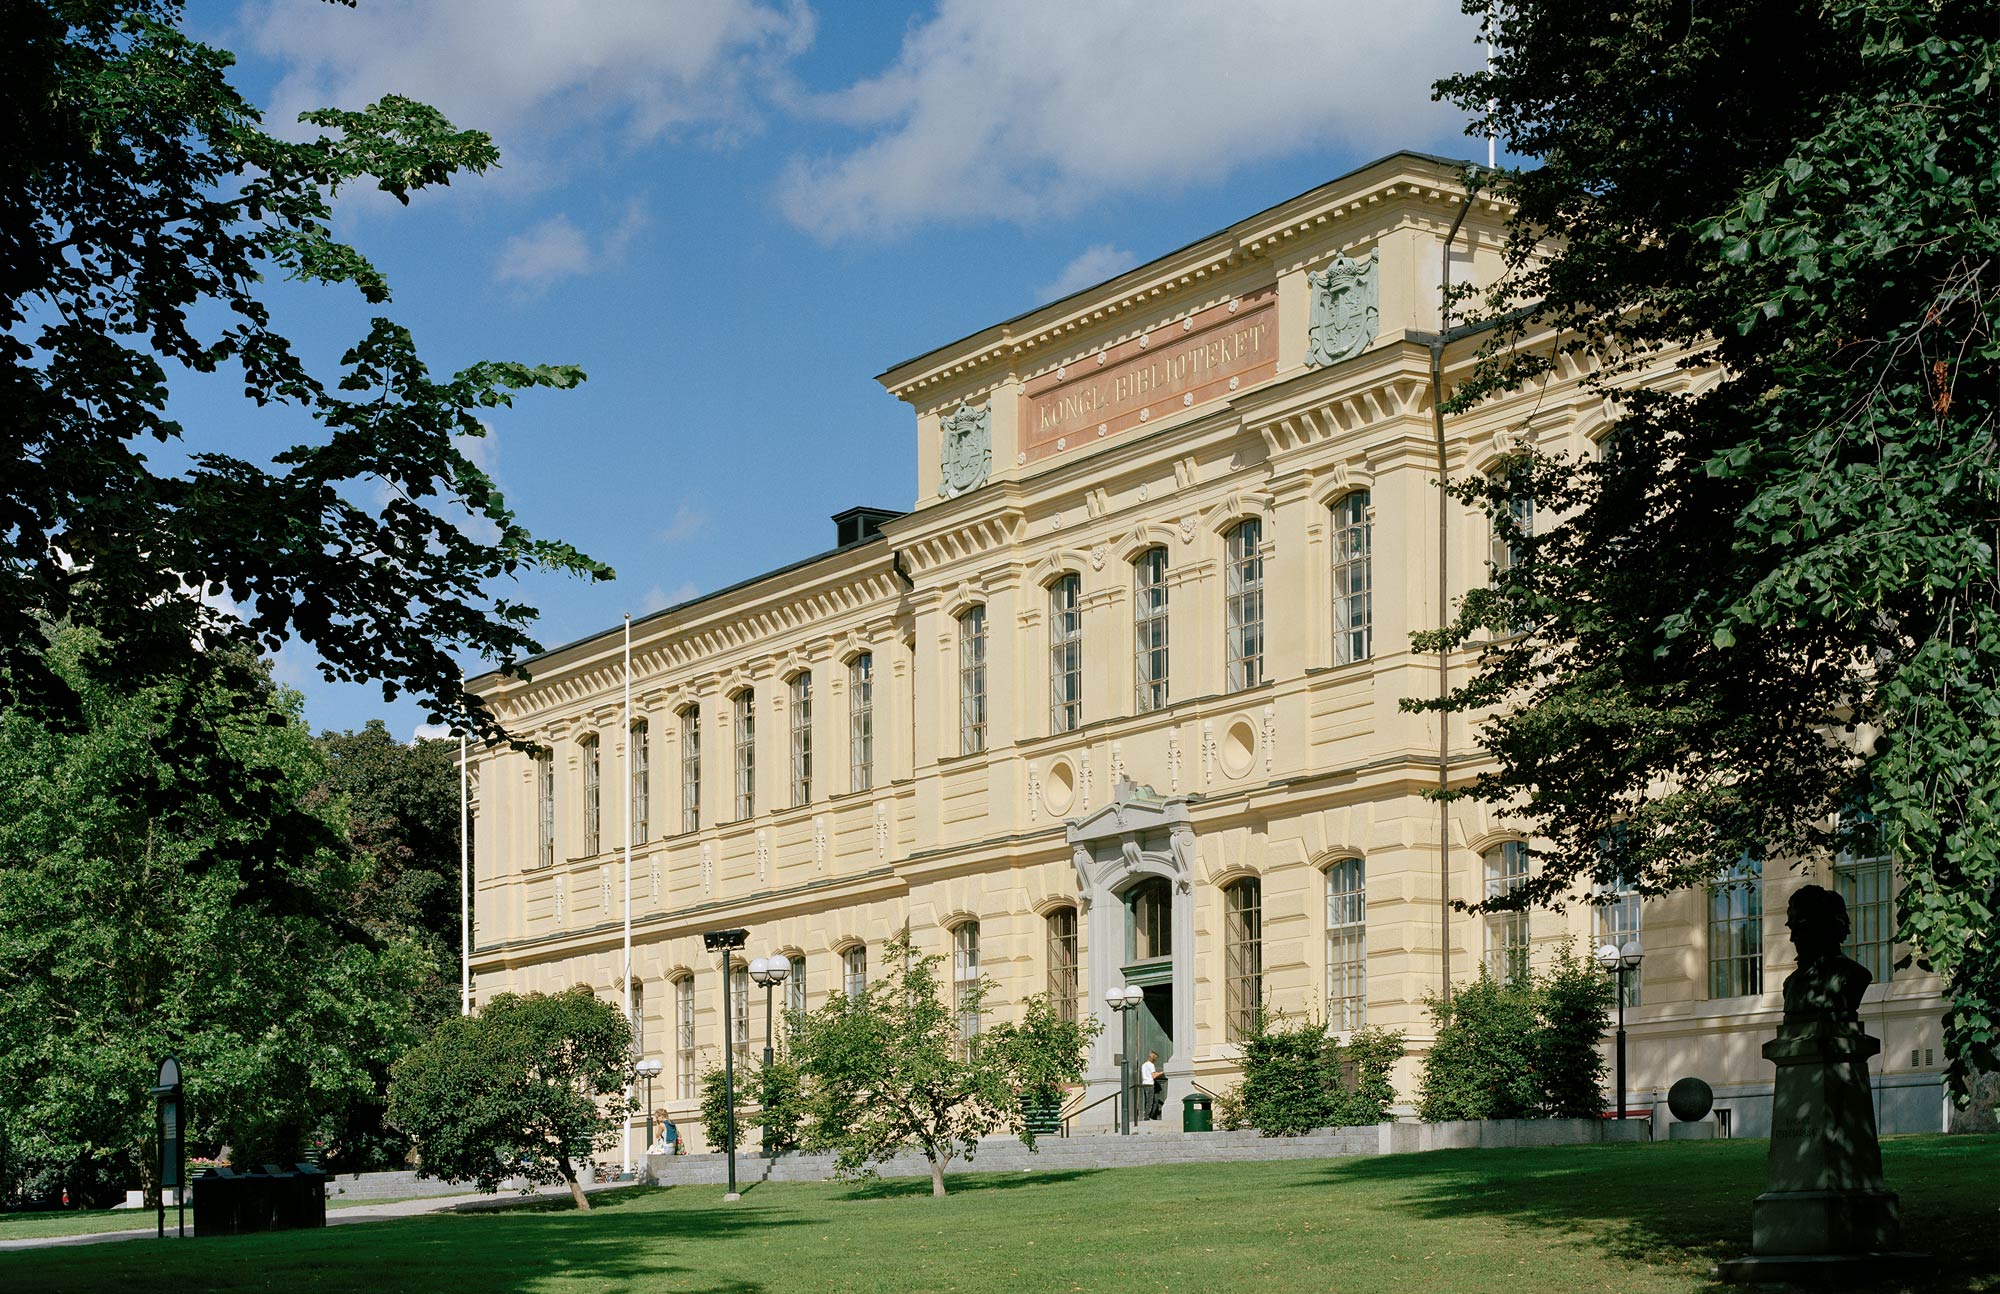 The National Library of Sweden – Kungliga biblioteket – Sveriges